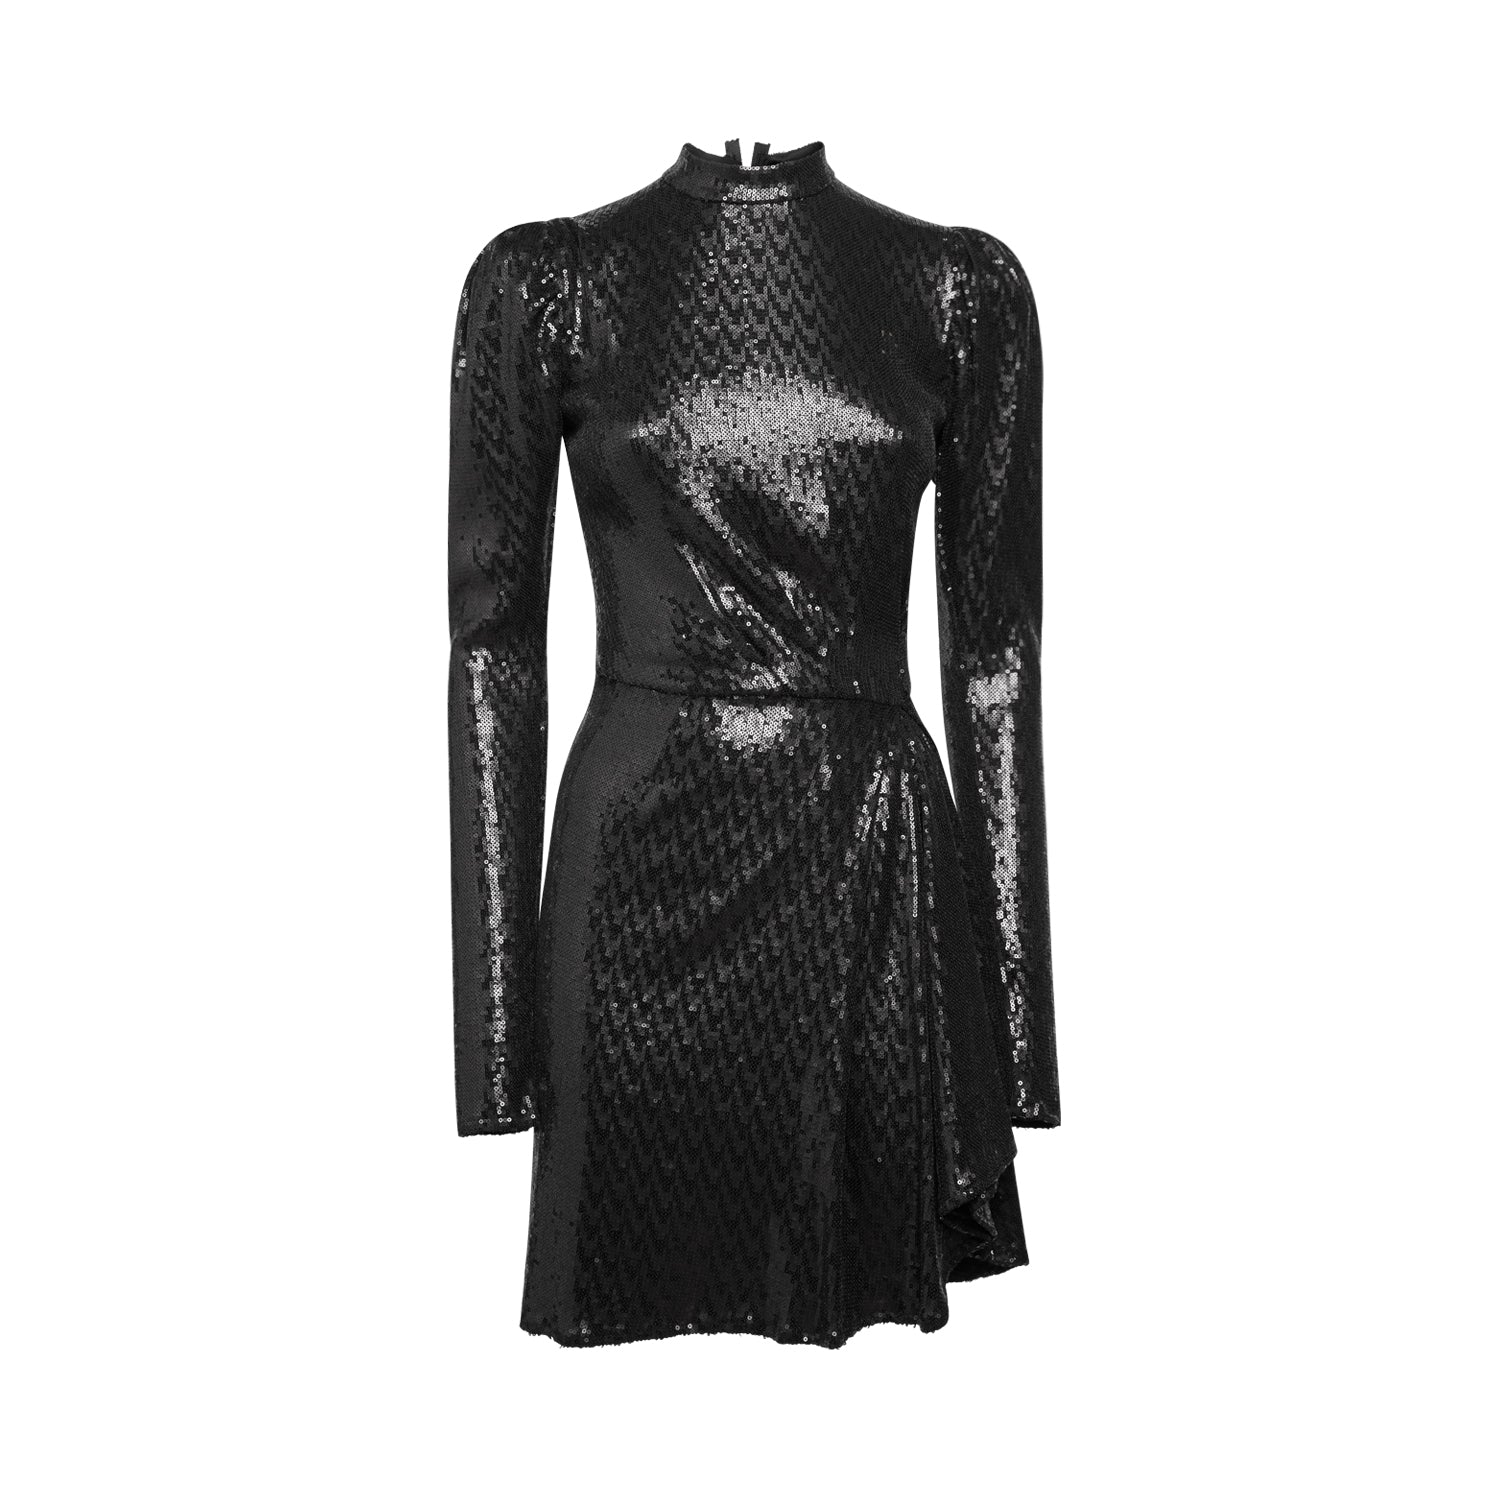 Women’s London Black Sequin Dress Large Sveta Milano